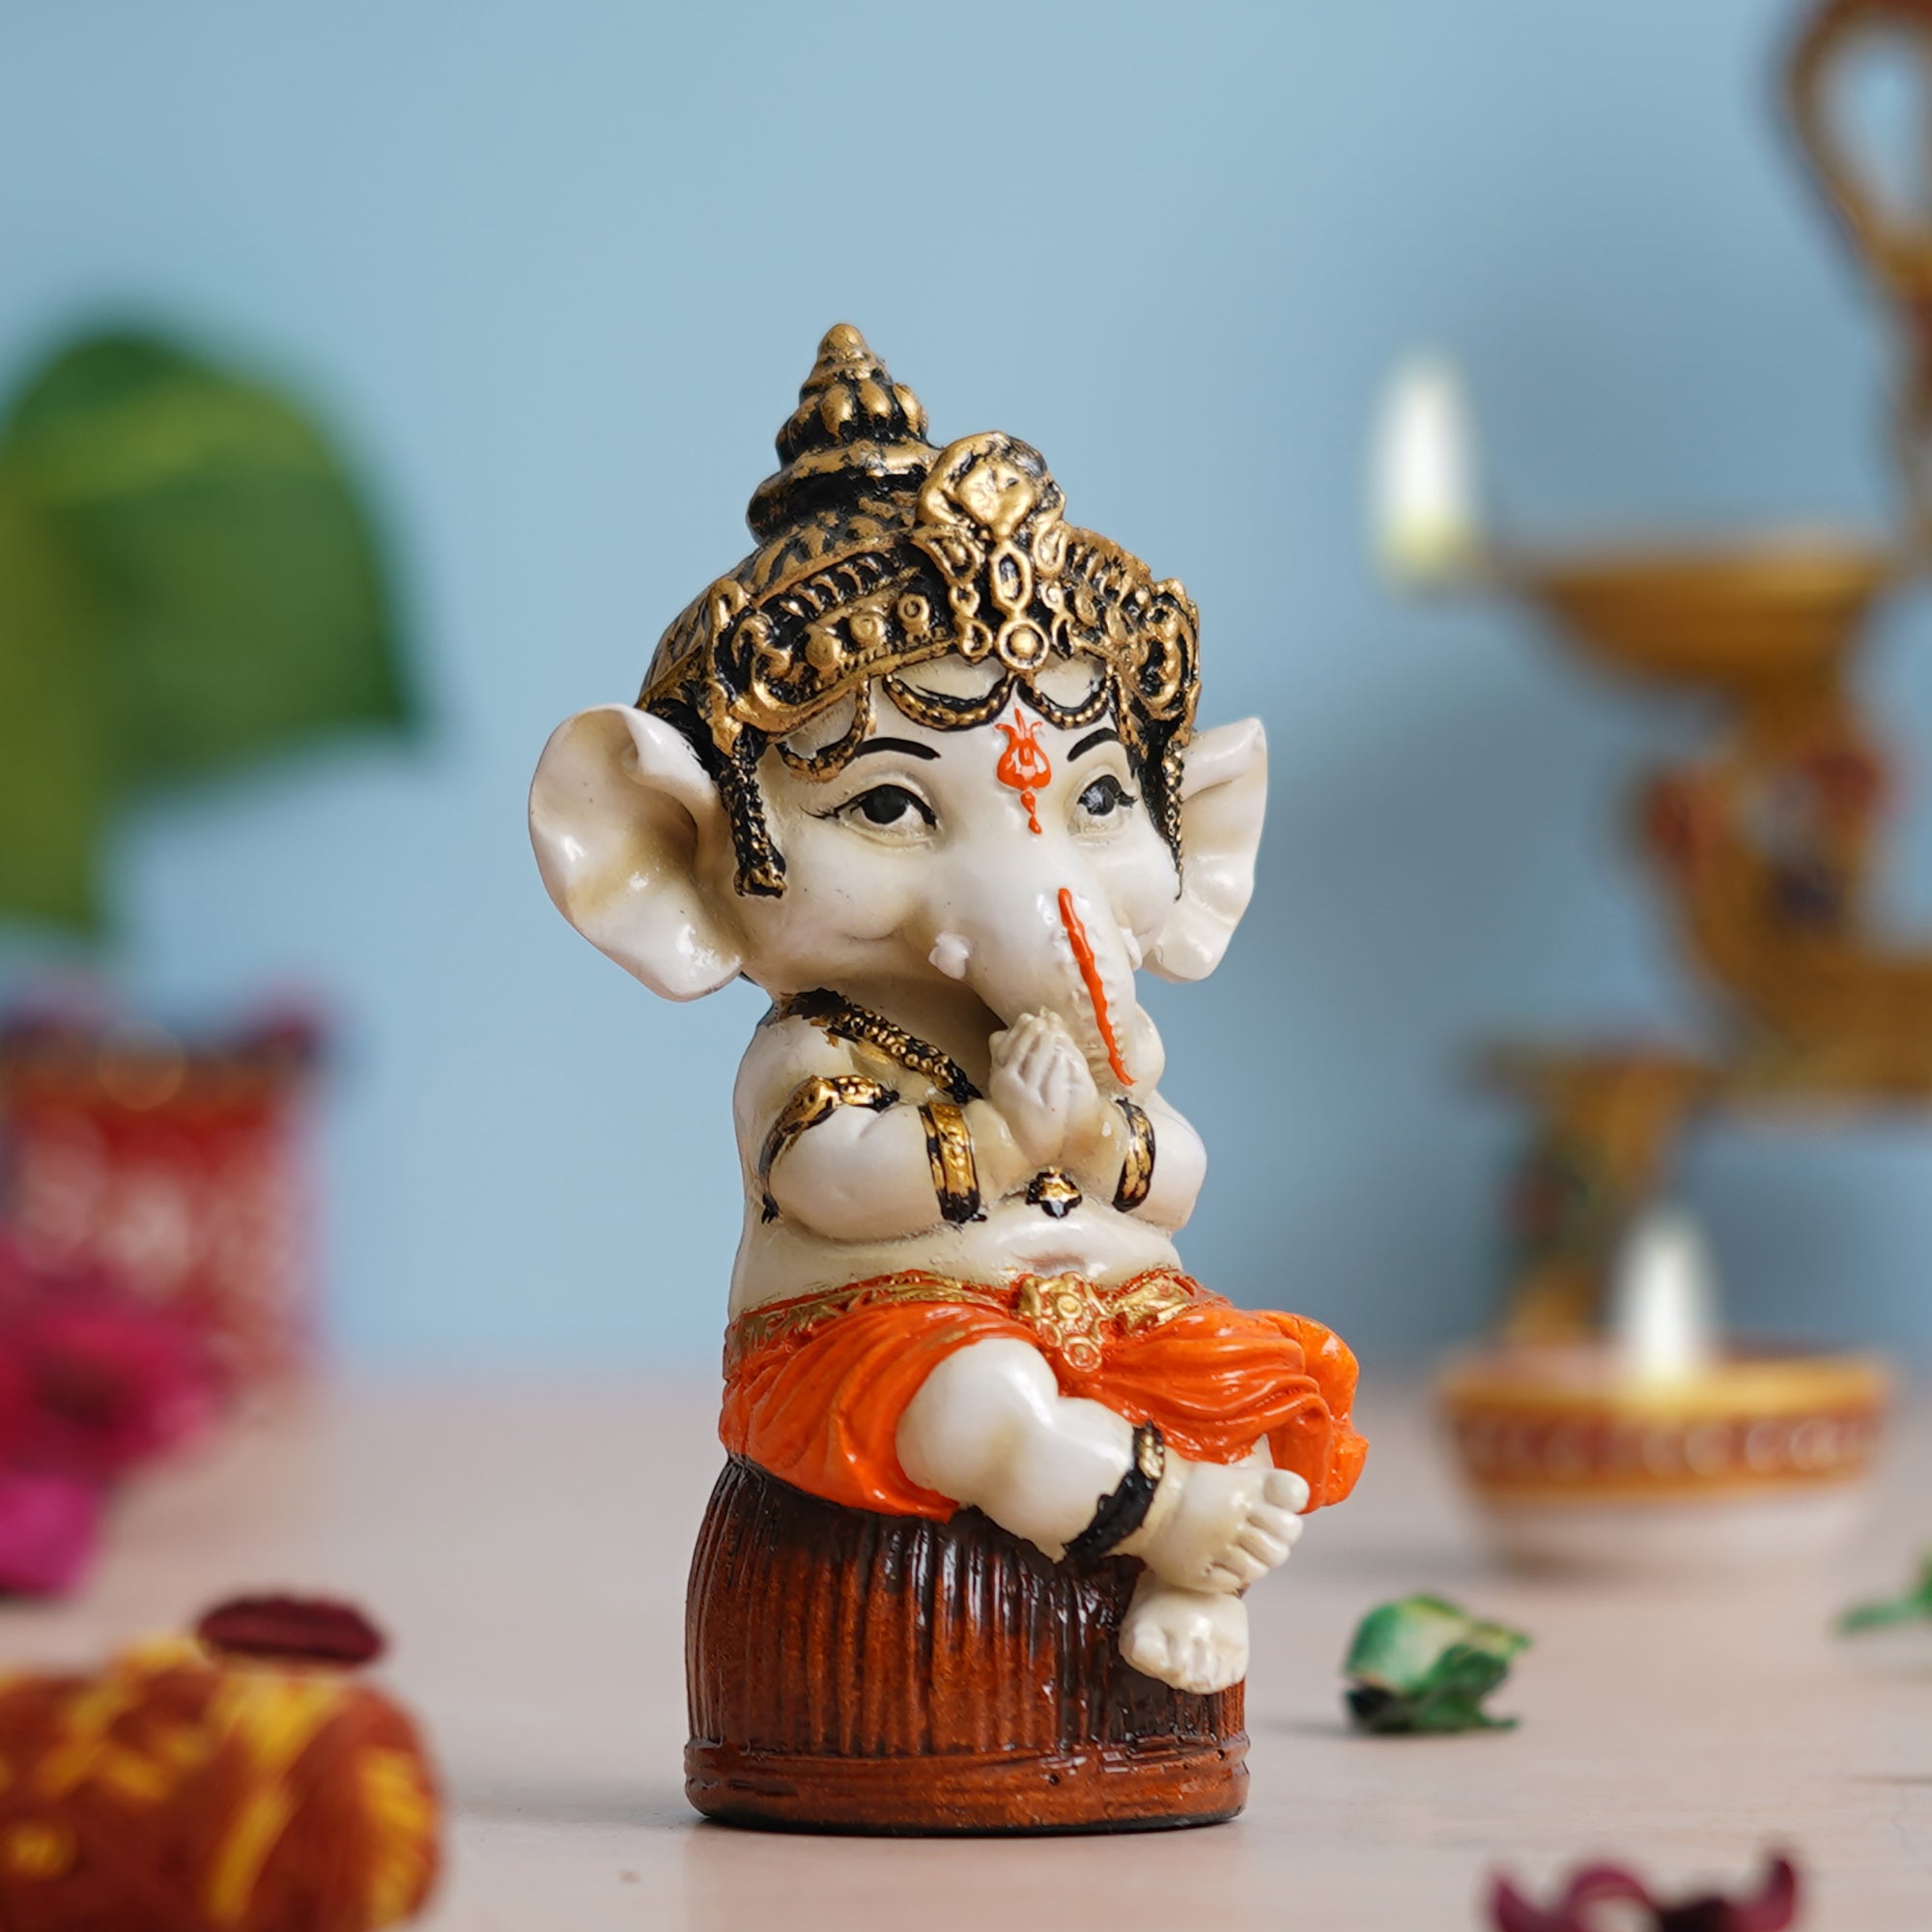 eCraftIndia Orange Polyresin Handcrafted Lord Ganesha Idol Sitting on Rock 1